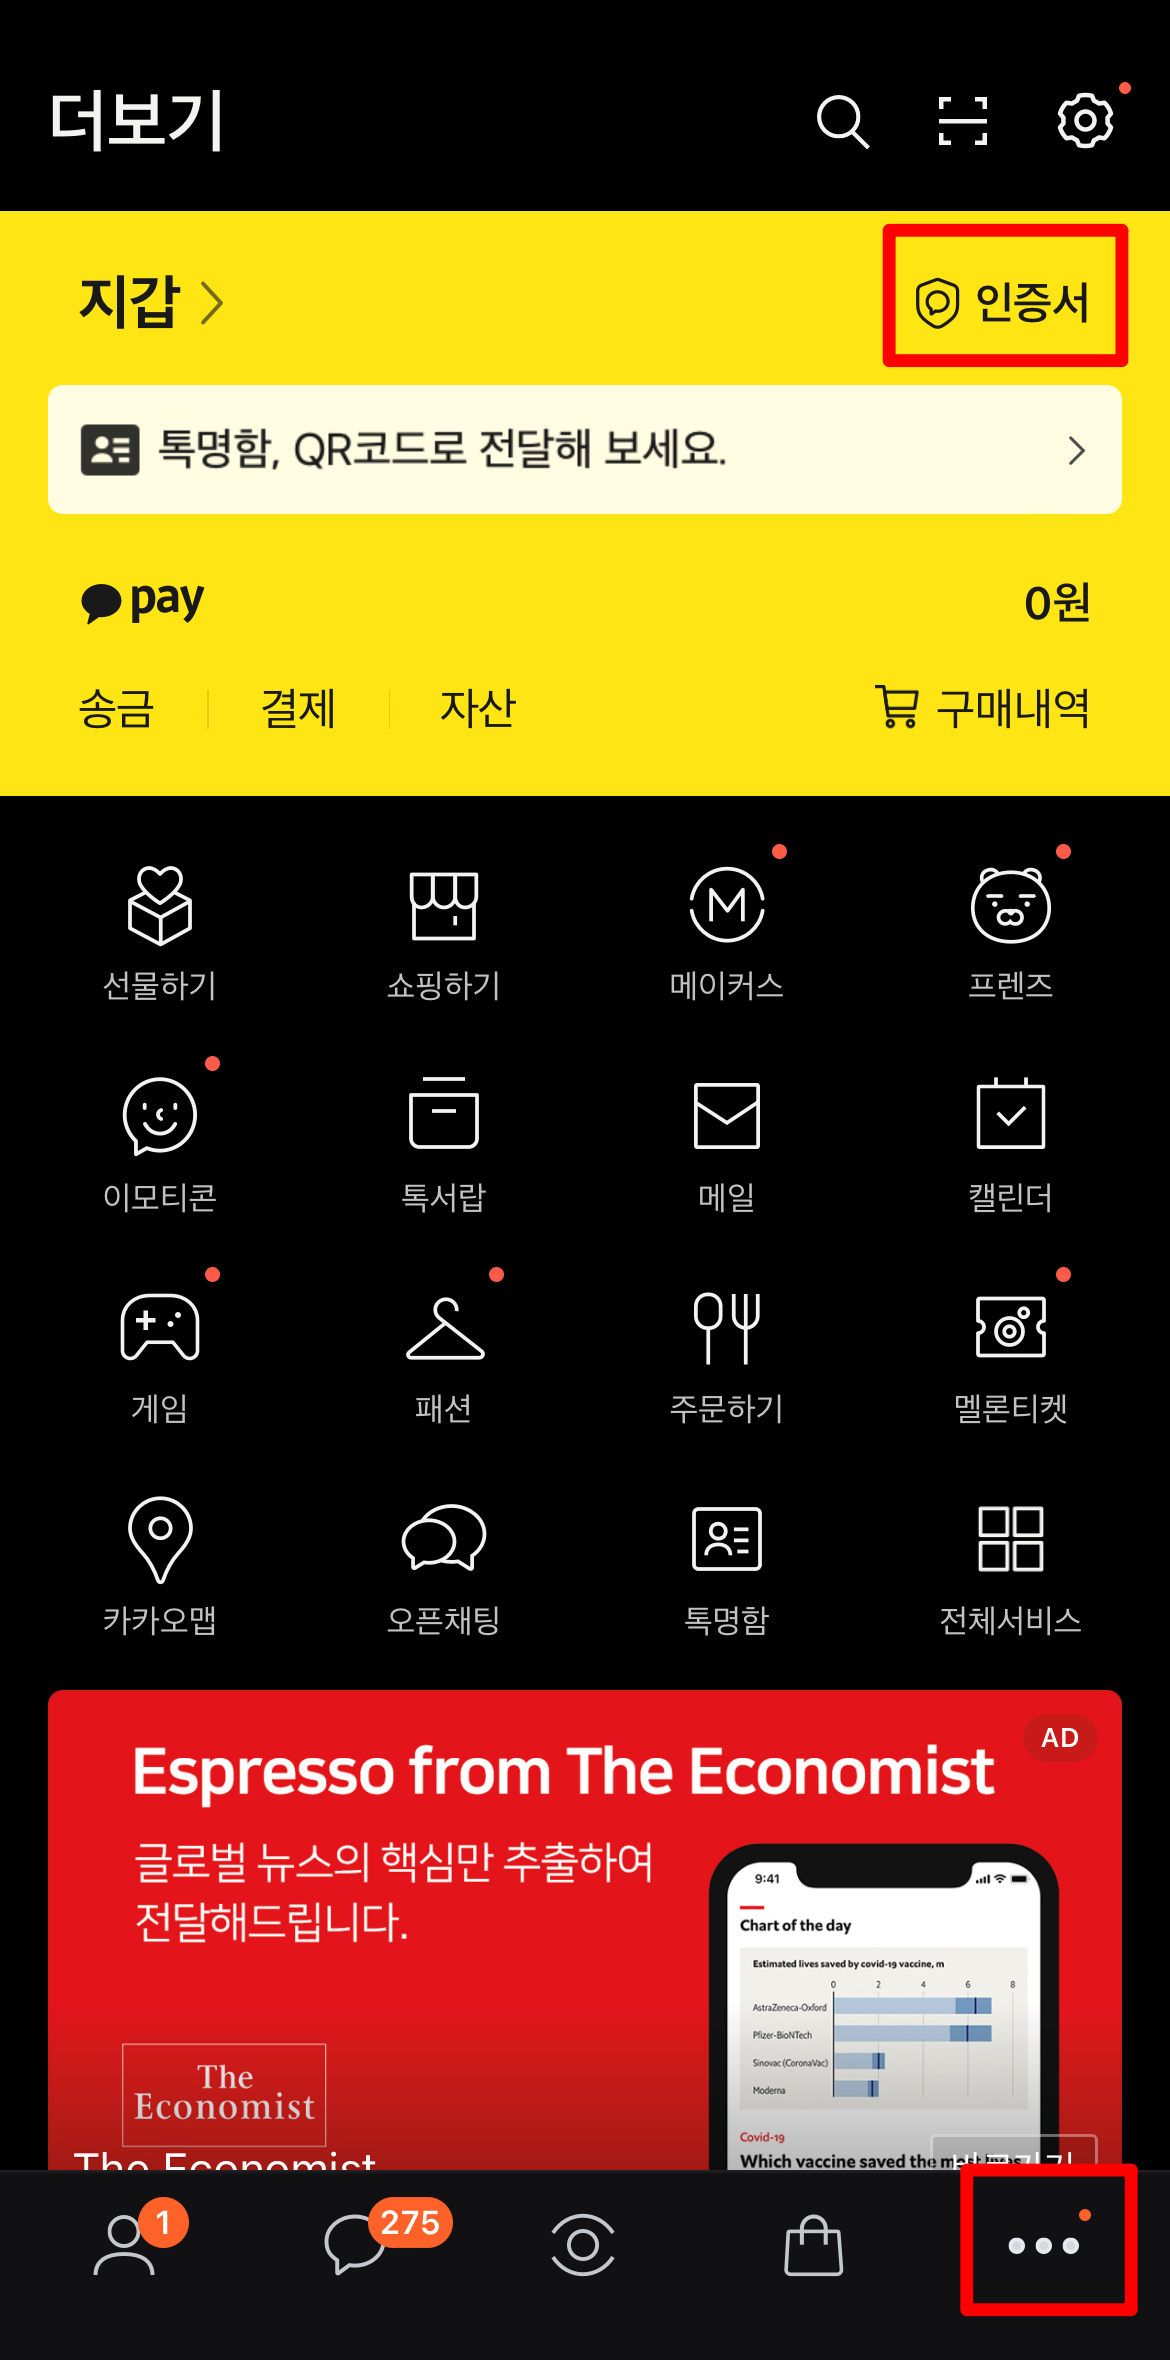 카카오톡 앱에서 더보기 메뉴 상단의 인증서 선택